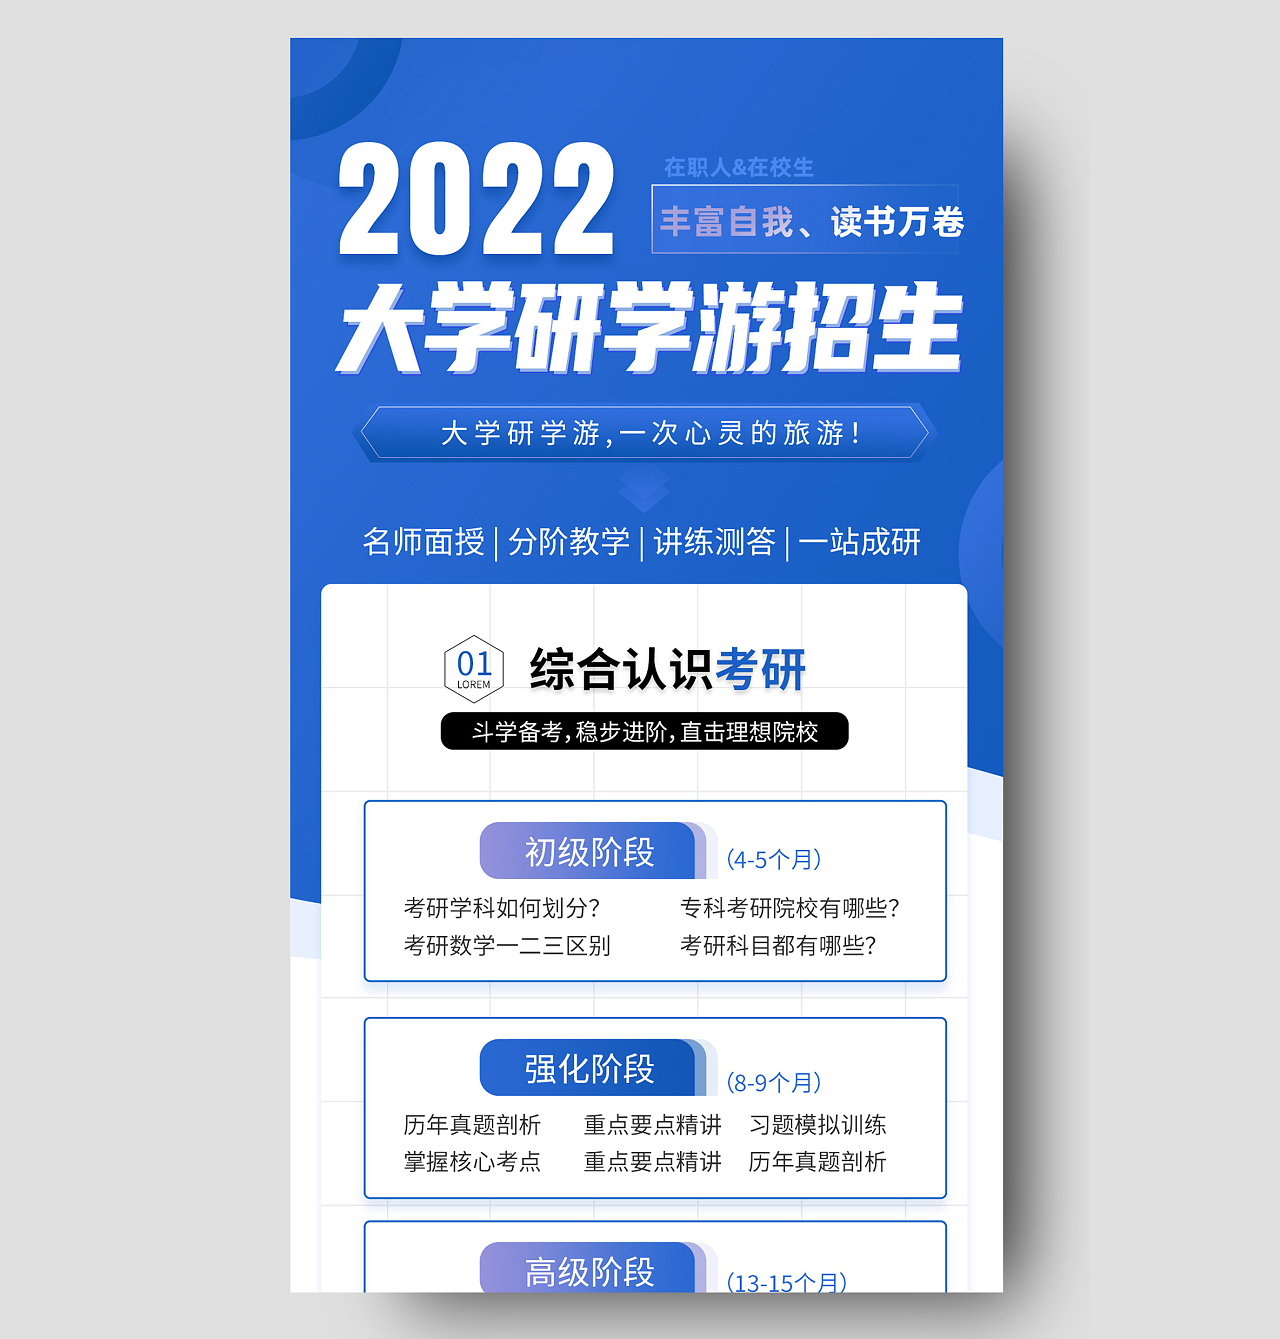 蓝色简约2022大学研学游招生研学游招生长图